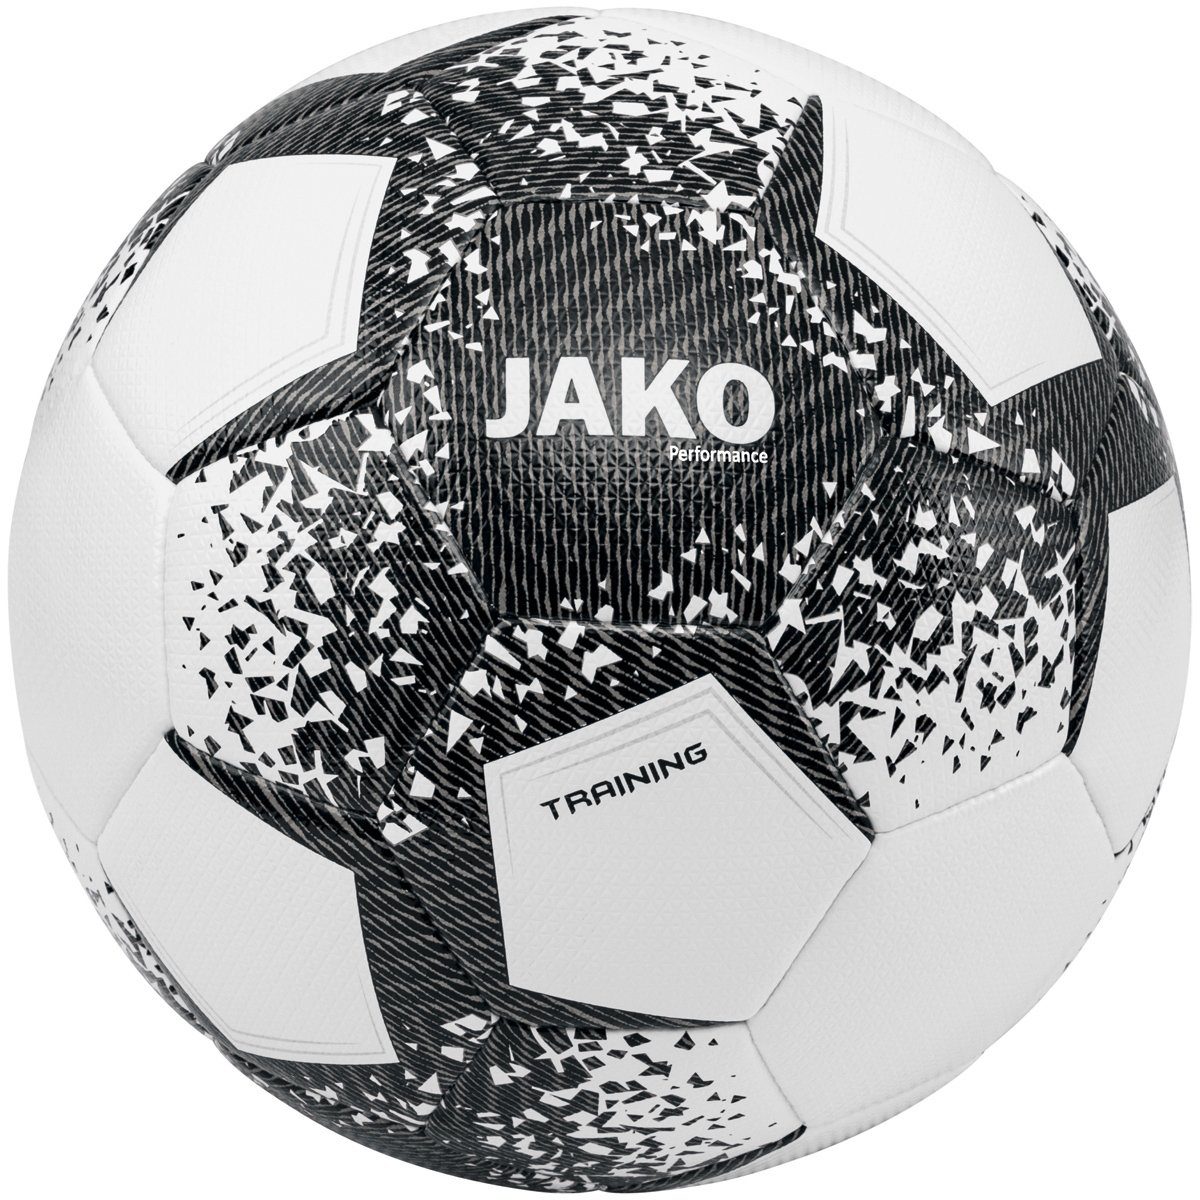 Jako Fußball Ball Performance - 2301 Trainingsball (Ganzjahresartikel) weiss/schwarz/steingrau | Fußbälle